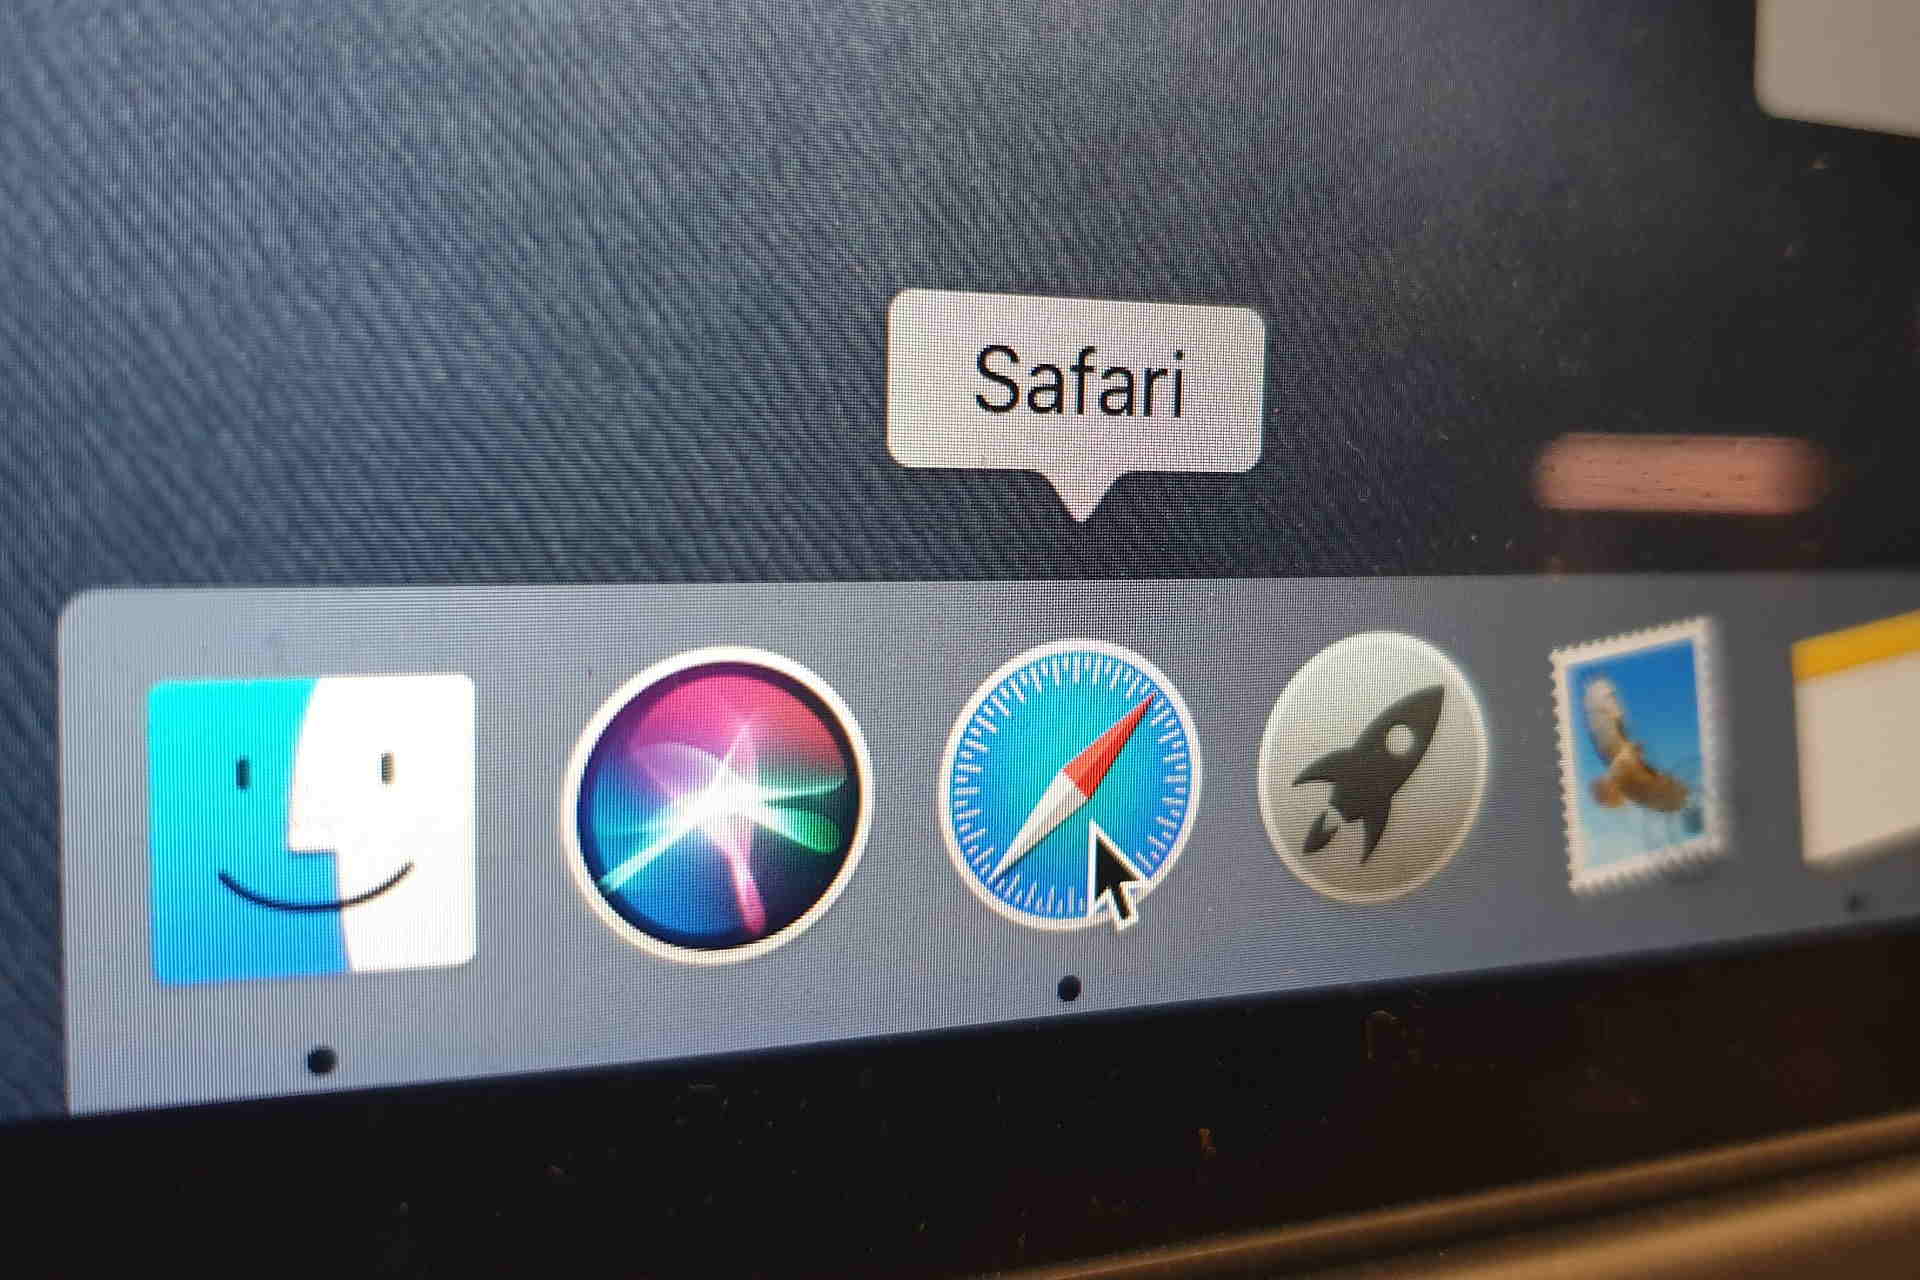 safari download for windows 10 64 bit